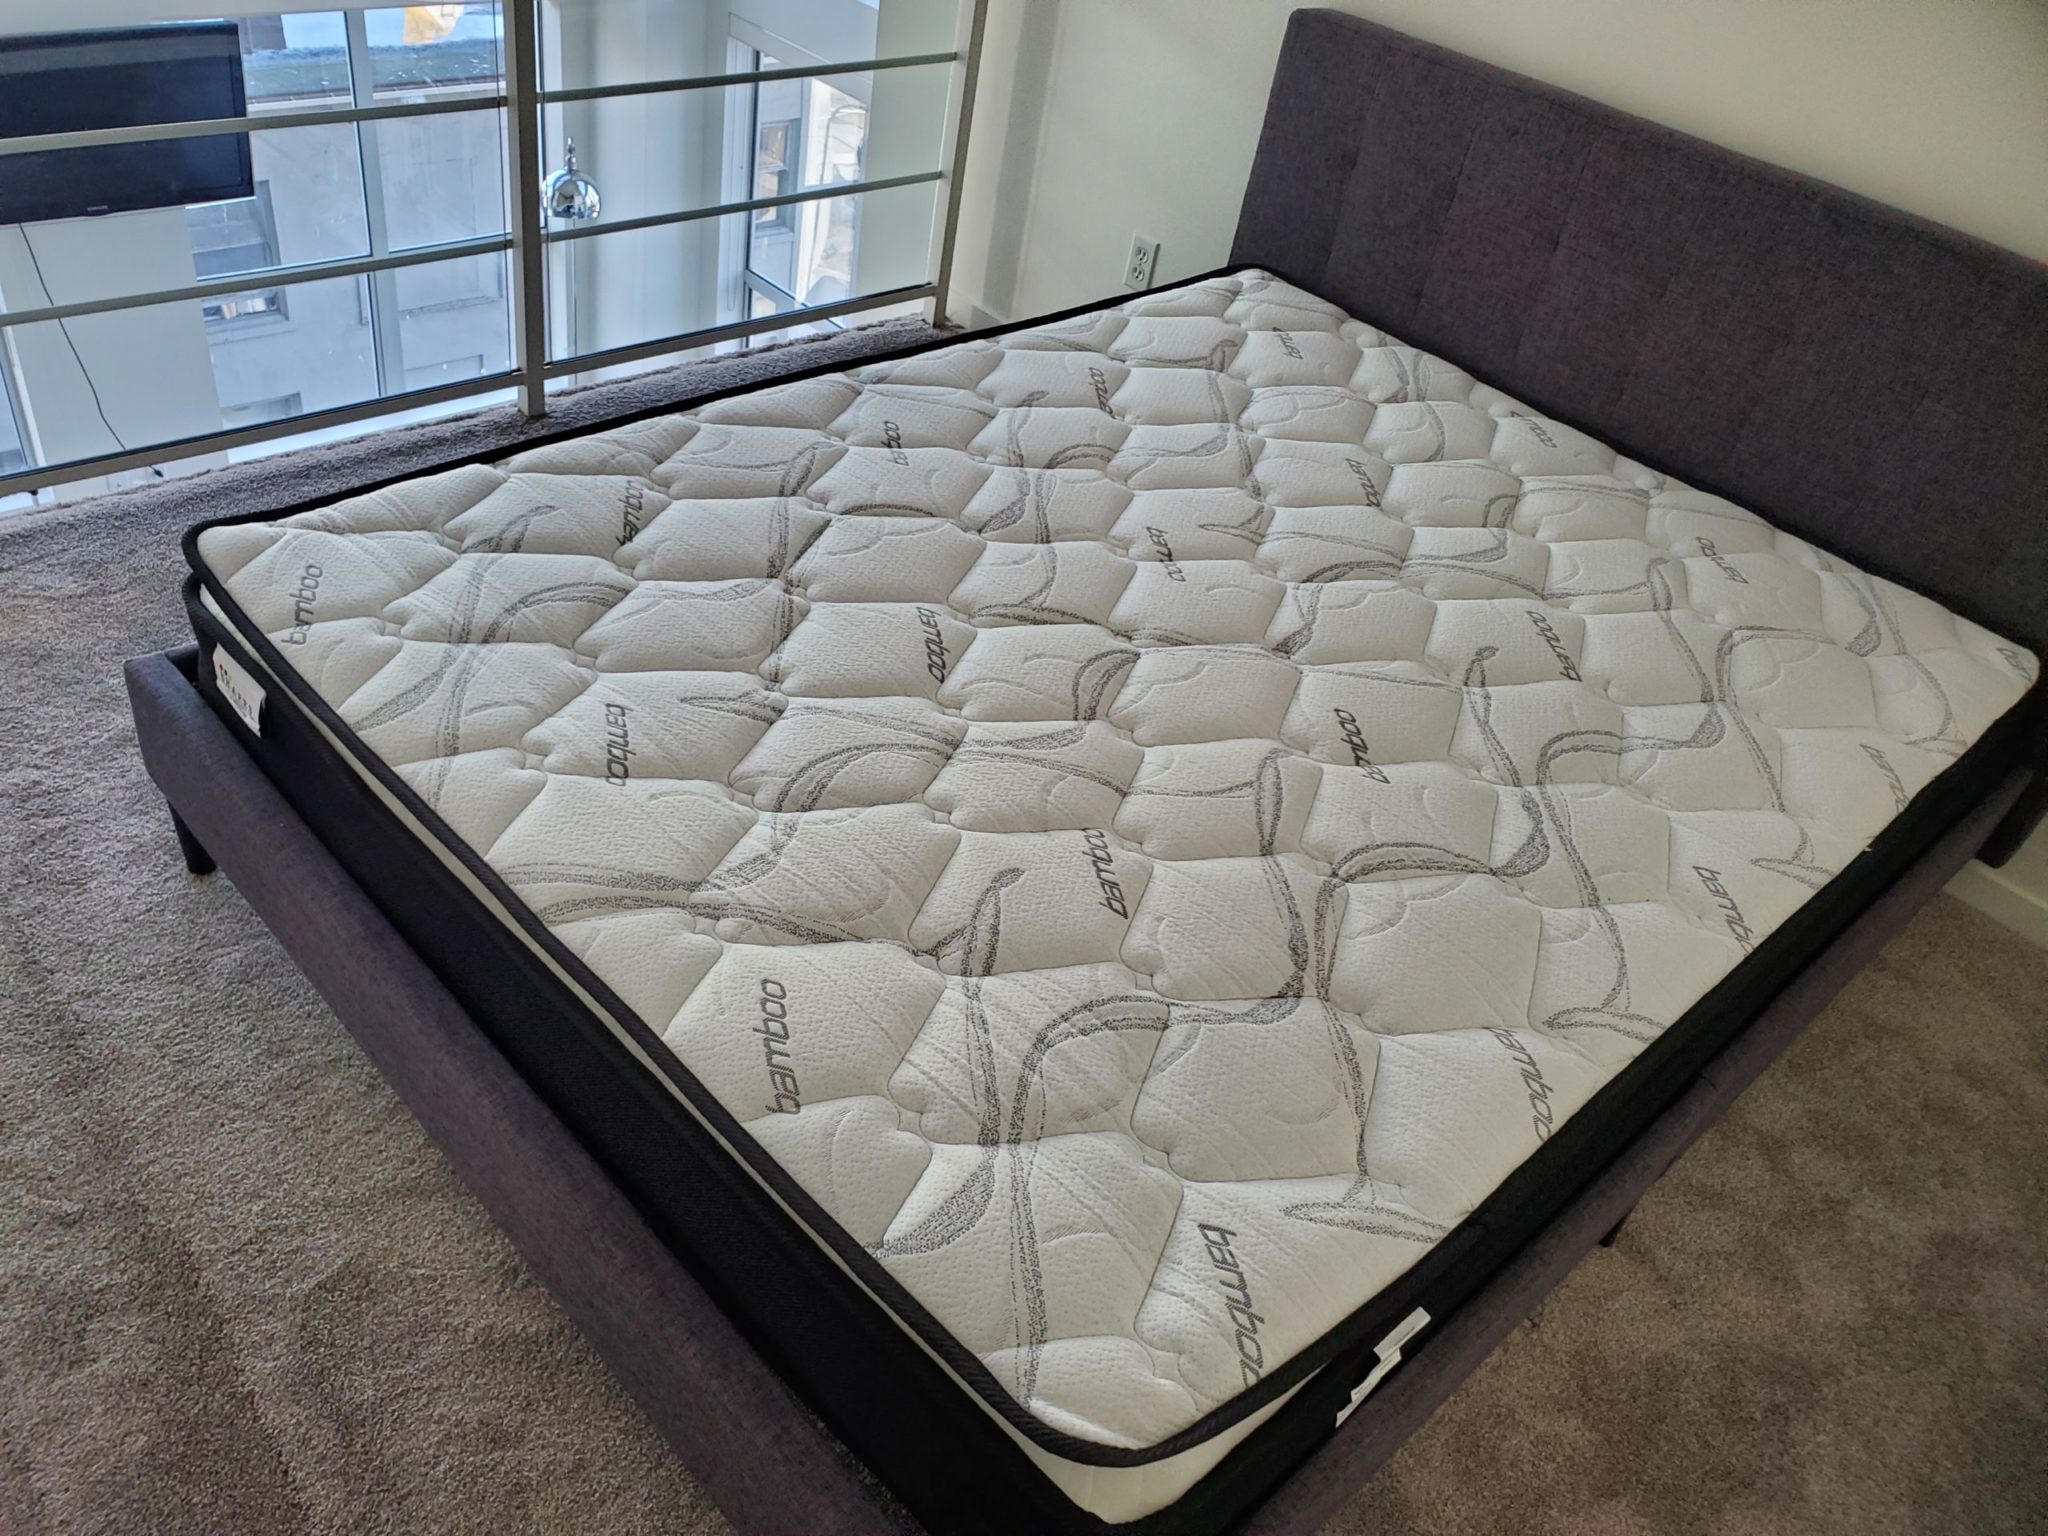 queen size bamboo pillow top mattress pad